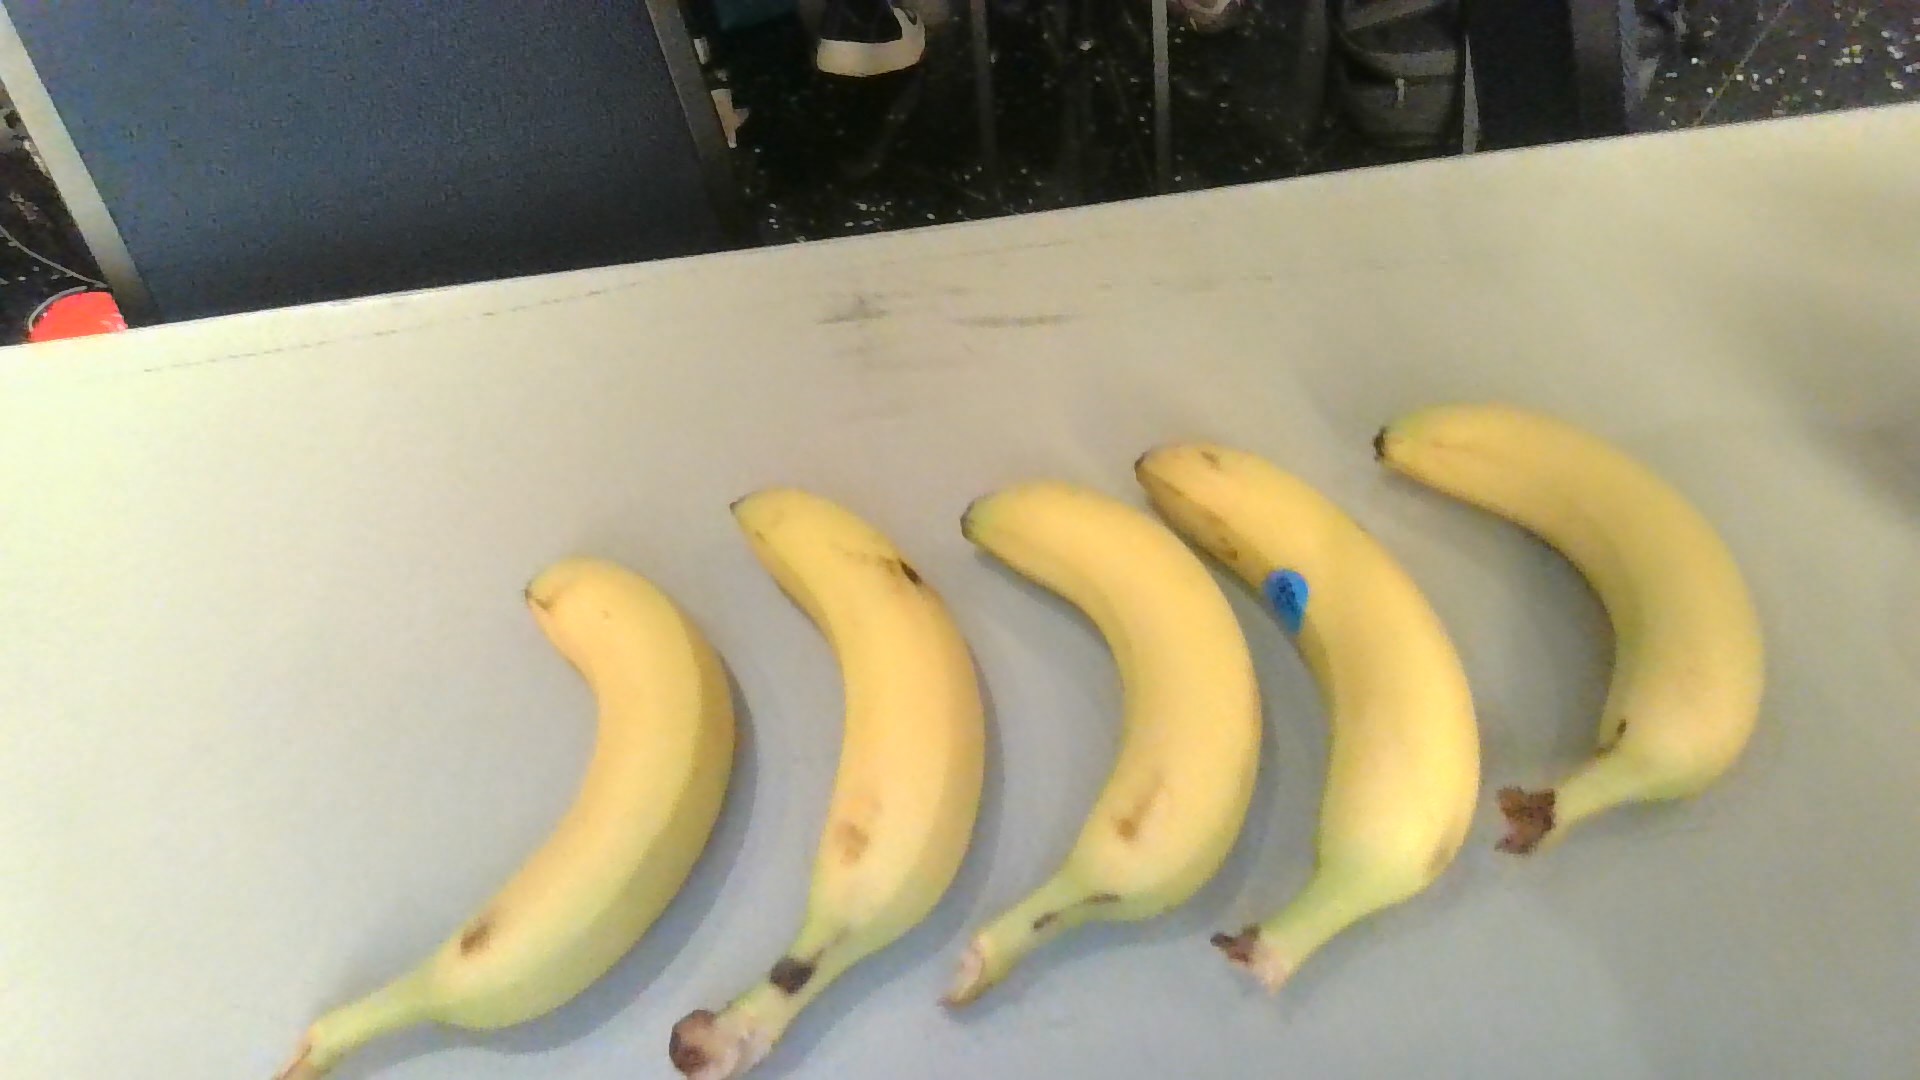 5 Banana